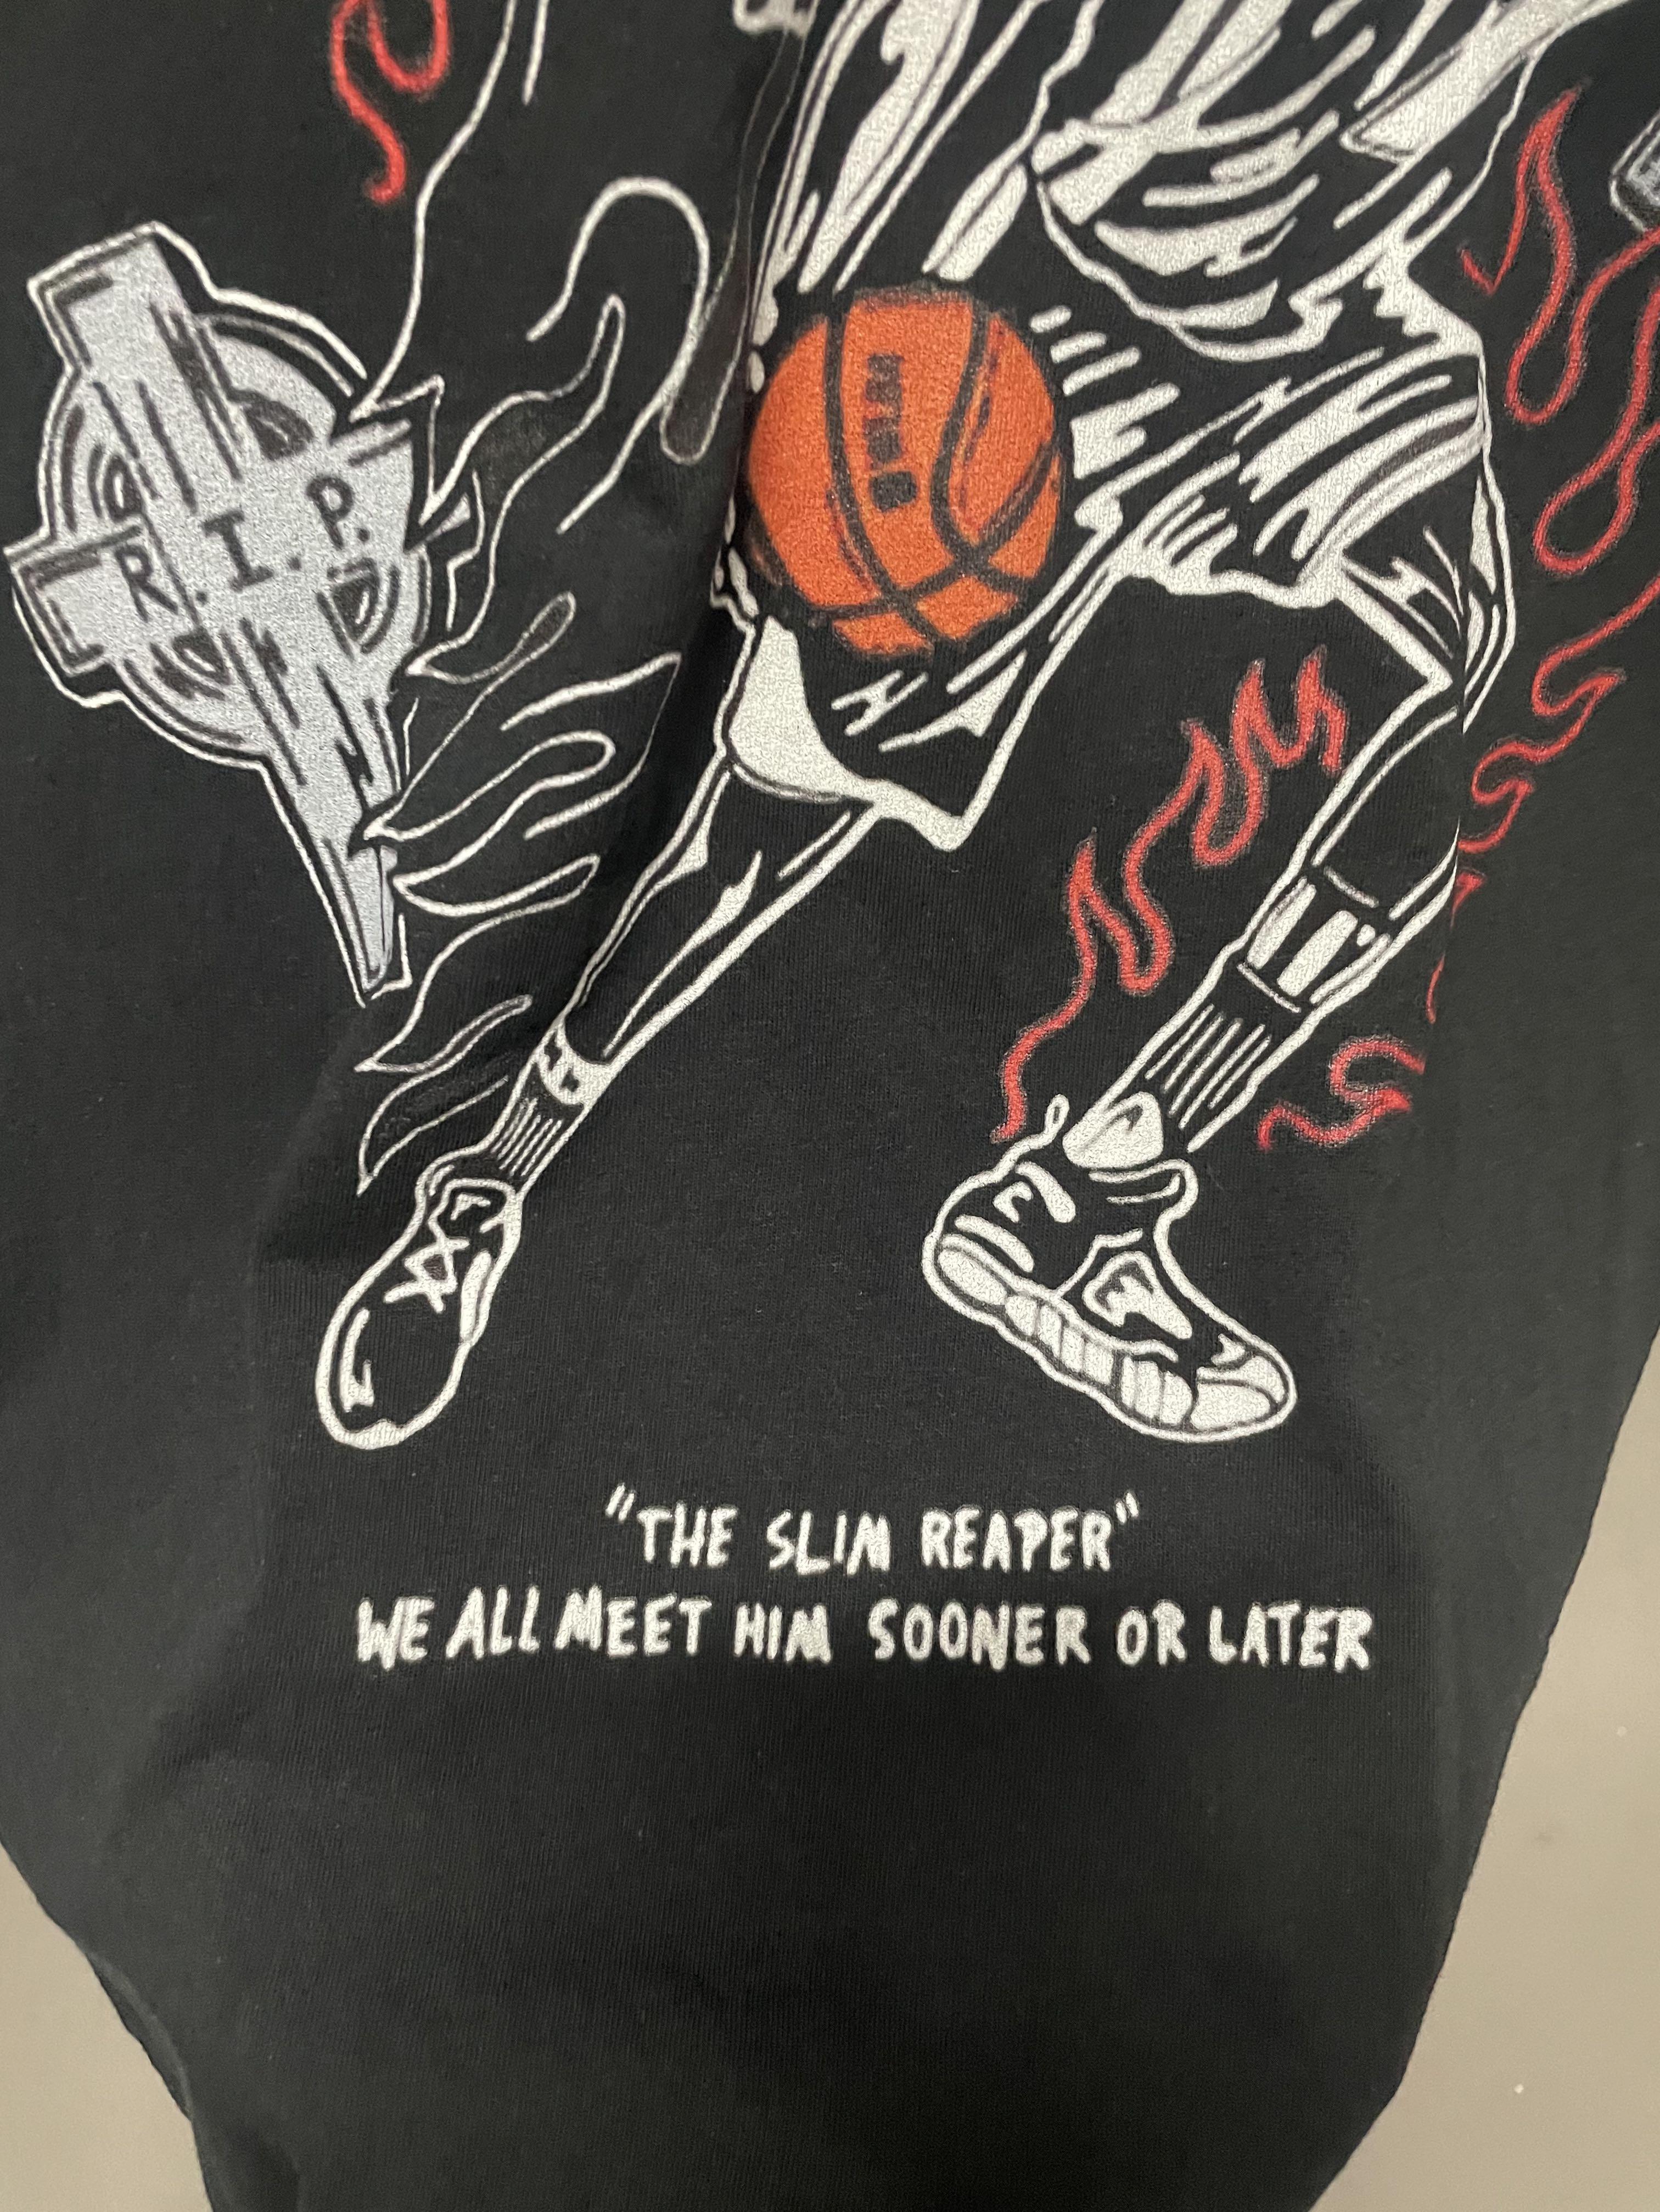 Warren Lotas  Brooklyn's finest  T-shirt | NBA Kevin Durant shirt, Kyrie  Irving, James Harden, New york nets shirt, NBA shirt - UNISEX